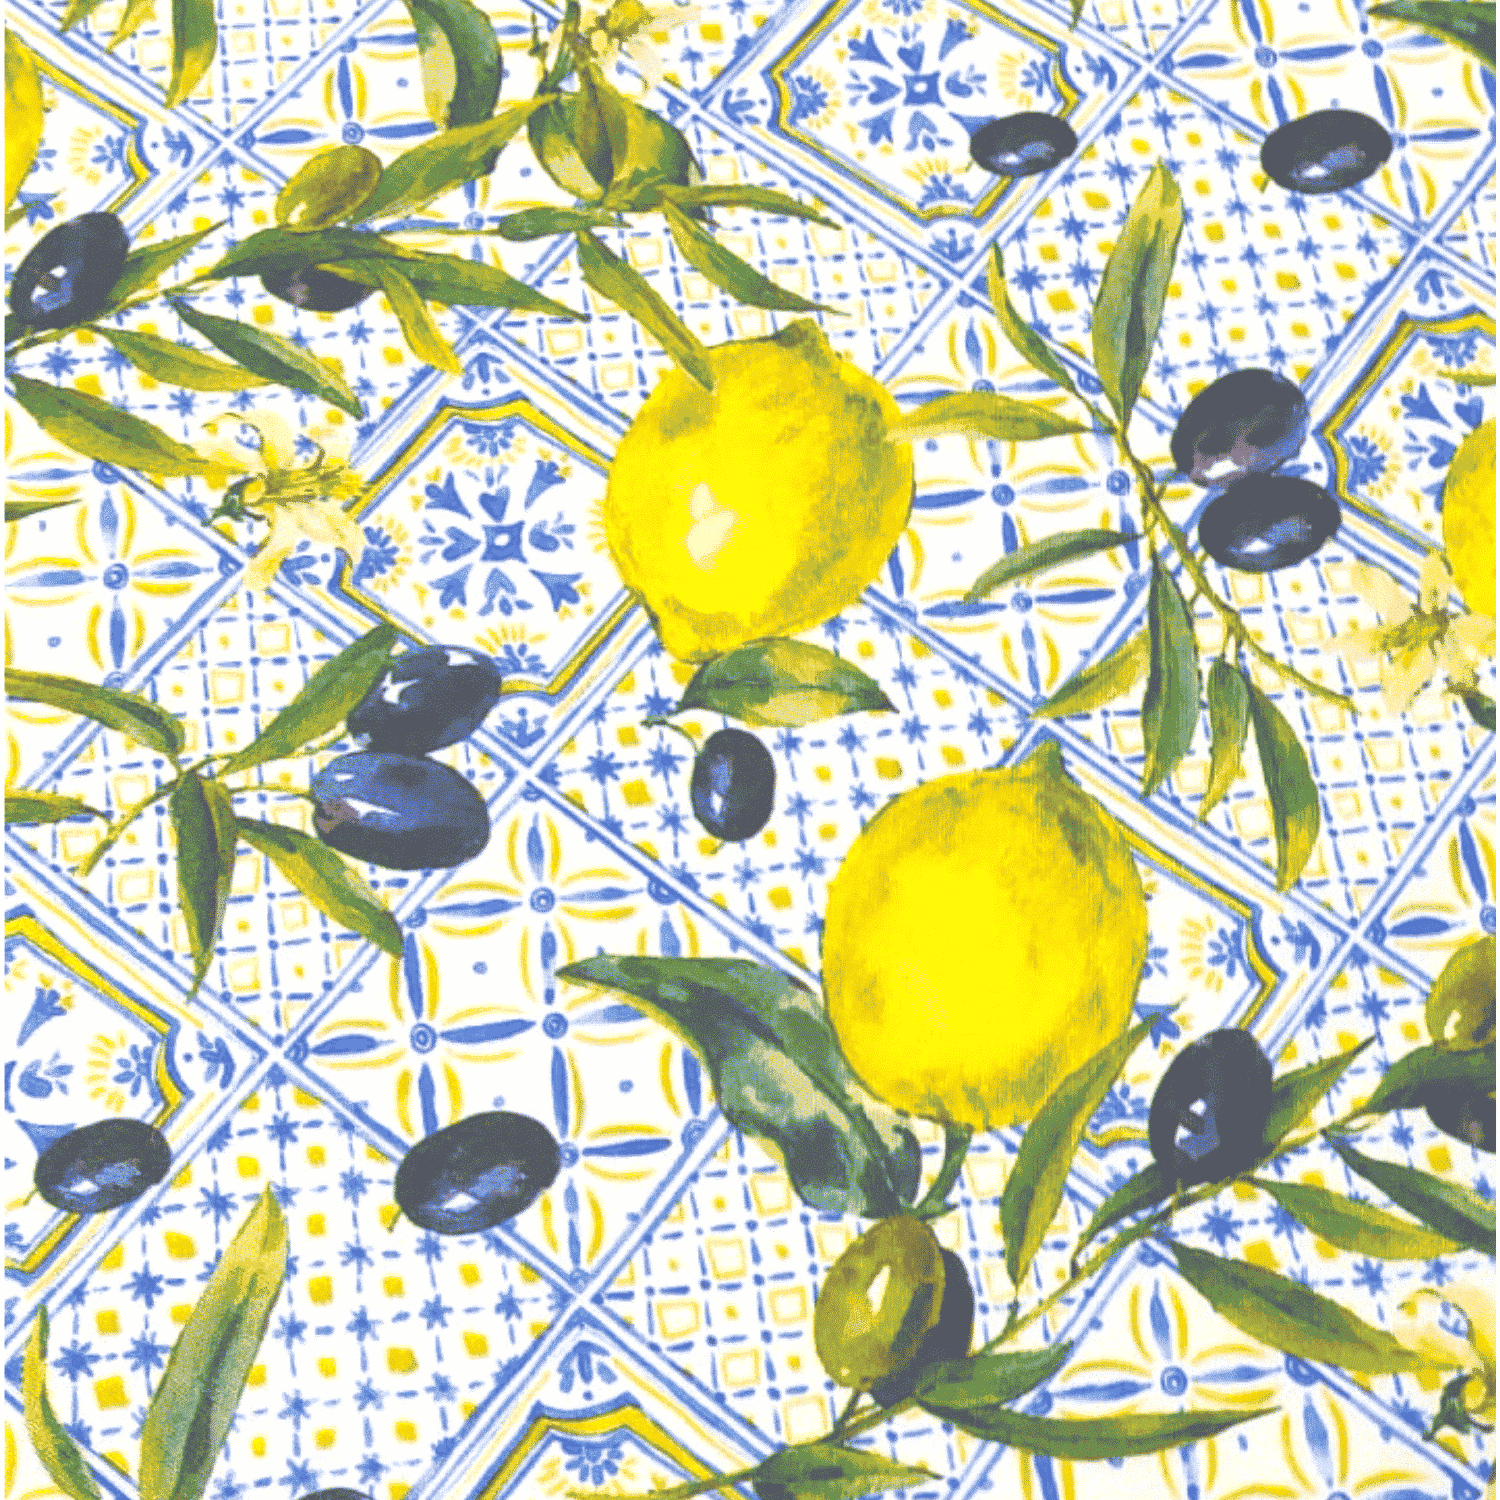 sorrento-taormina-tovaglia-antimacchia-idrorepellente-maioliche-patchwork-limoni-olive-ulivi-giallo-azzurro-beige-bianco-verde-dettaglio